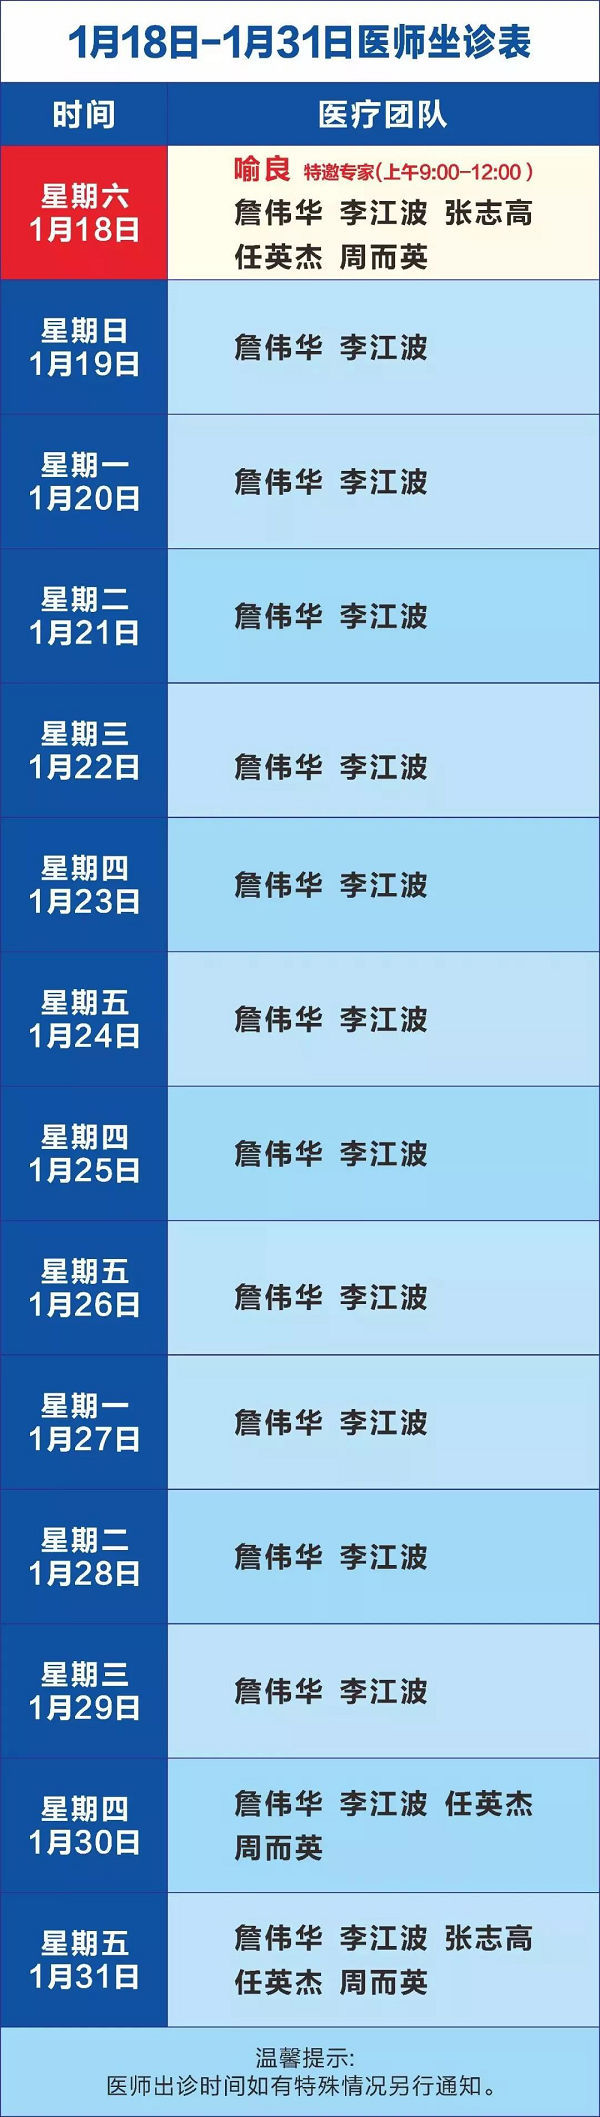 成都神康癫痫医院1月20日-1月31日医生出诊时间安排及援助活动!